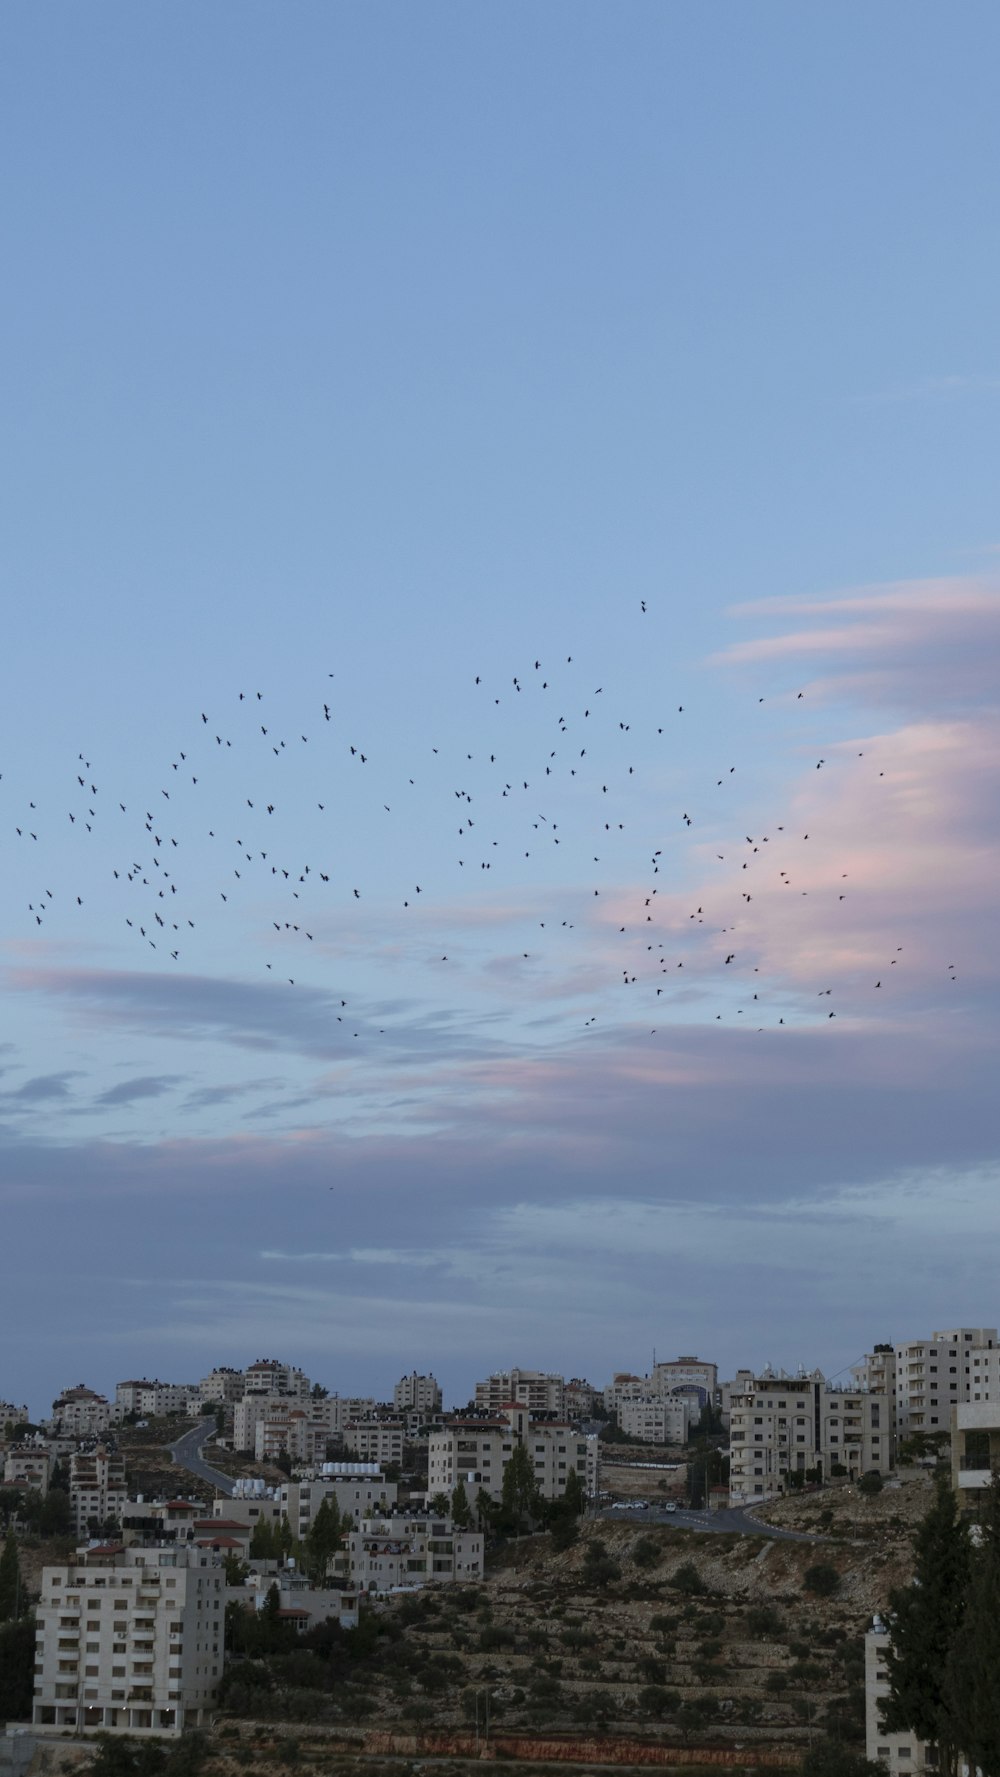 uno stormo di uccelli che sorvola una città